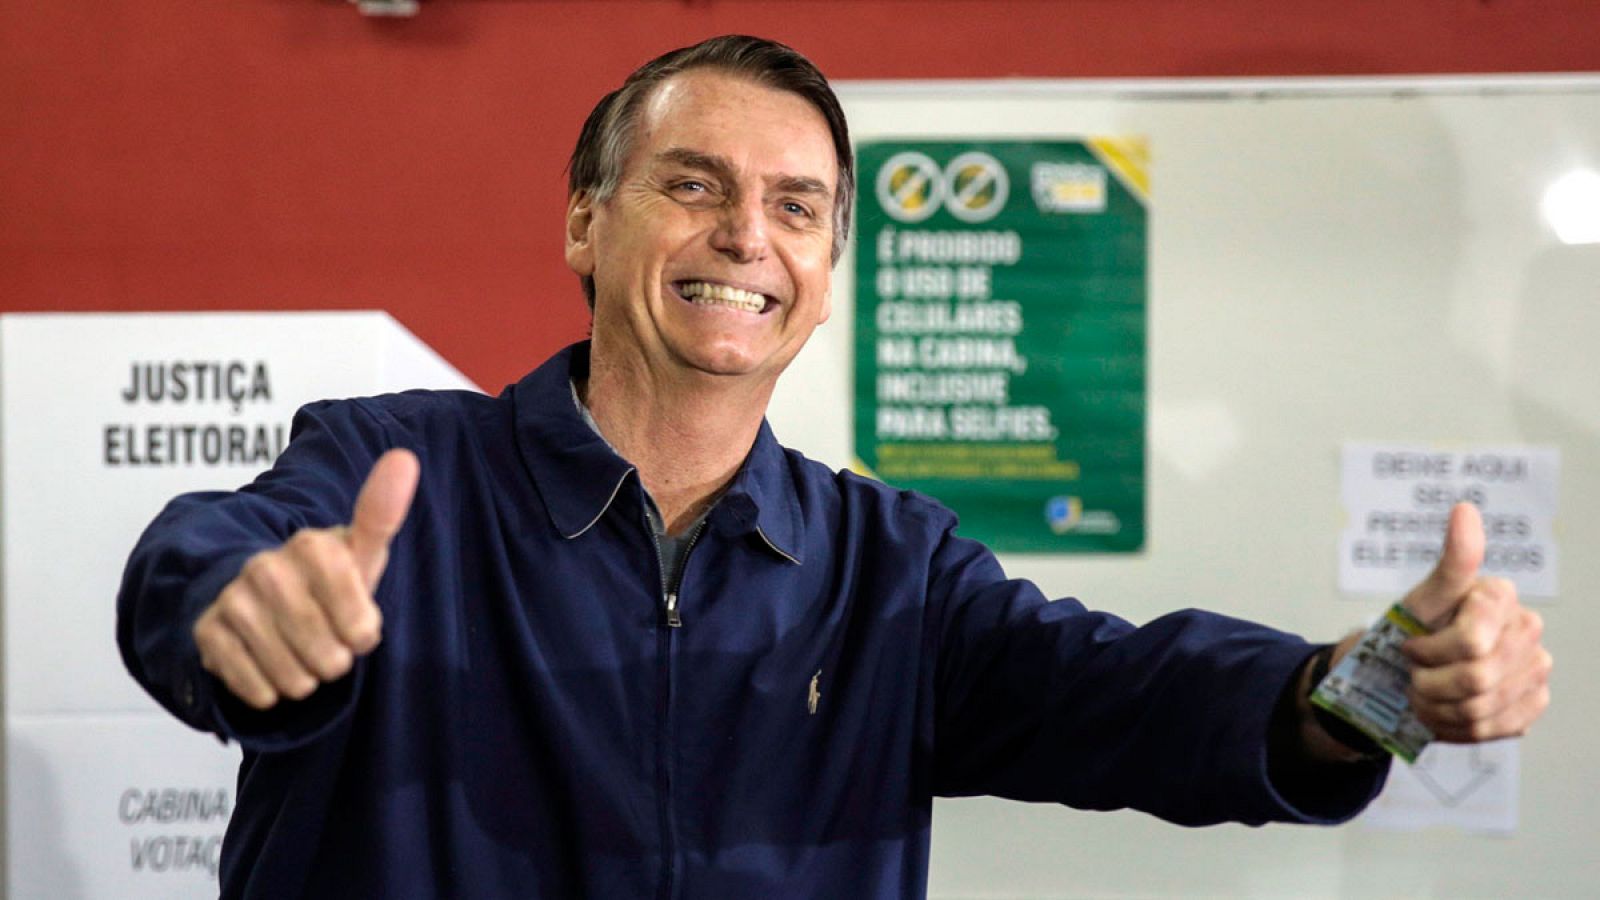 El candidato ultraderechista Jair Bolsonaro ha vencido en la primera vuelta de las presidenciales brasileñas con un 46,03% de los votos